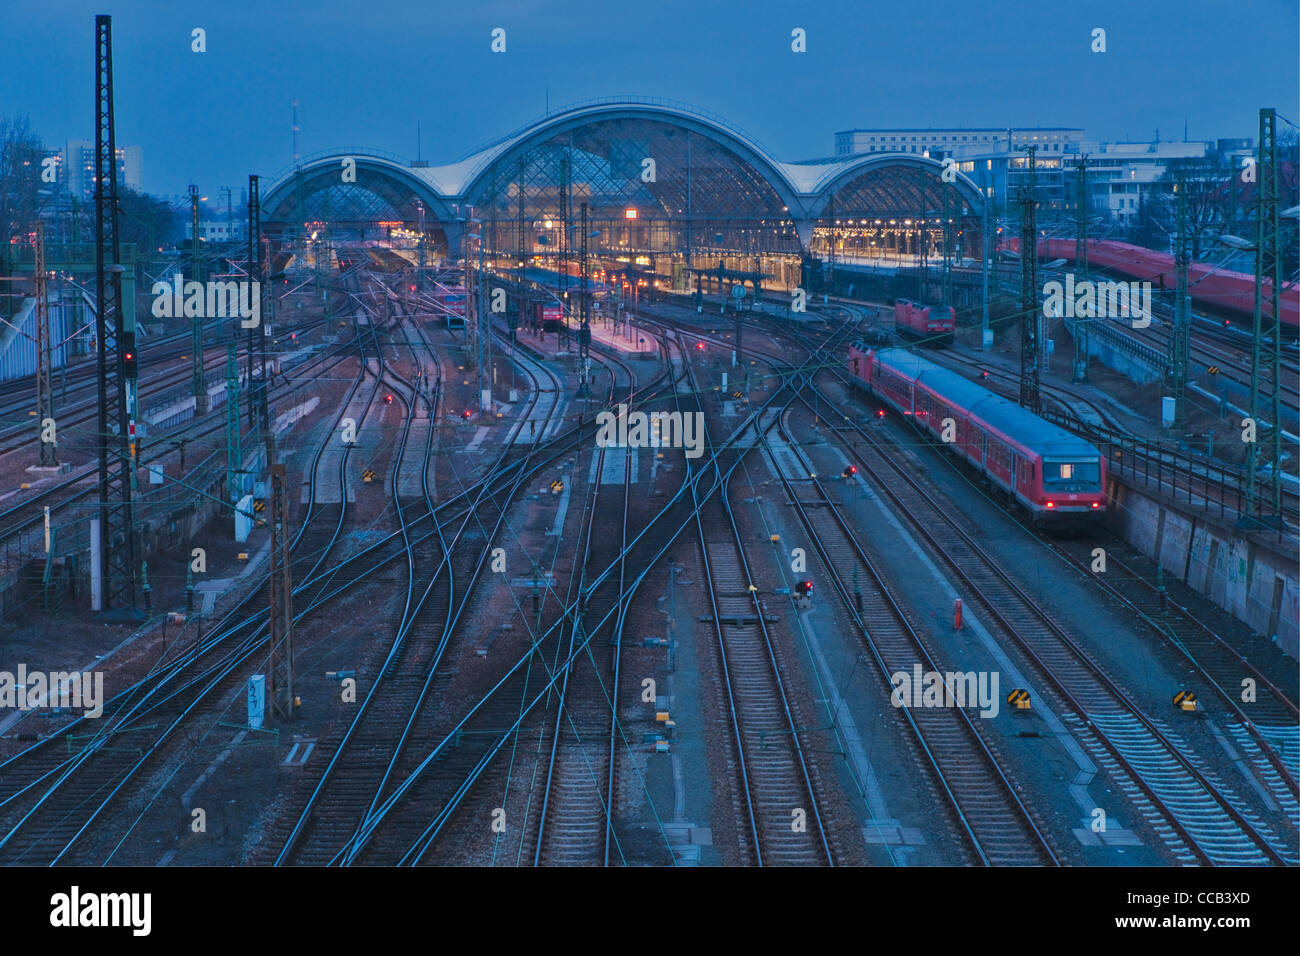 Vista desde el puente Budapester Street hasta la estación central de ferrocarril, Dresde, Sajonia, Alemania, Europa Foto de stock